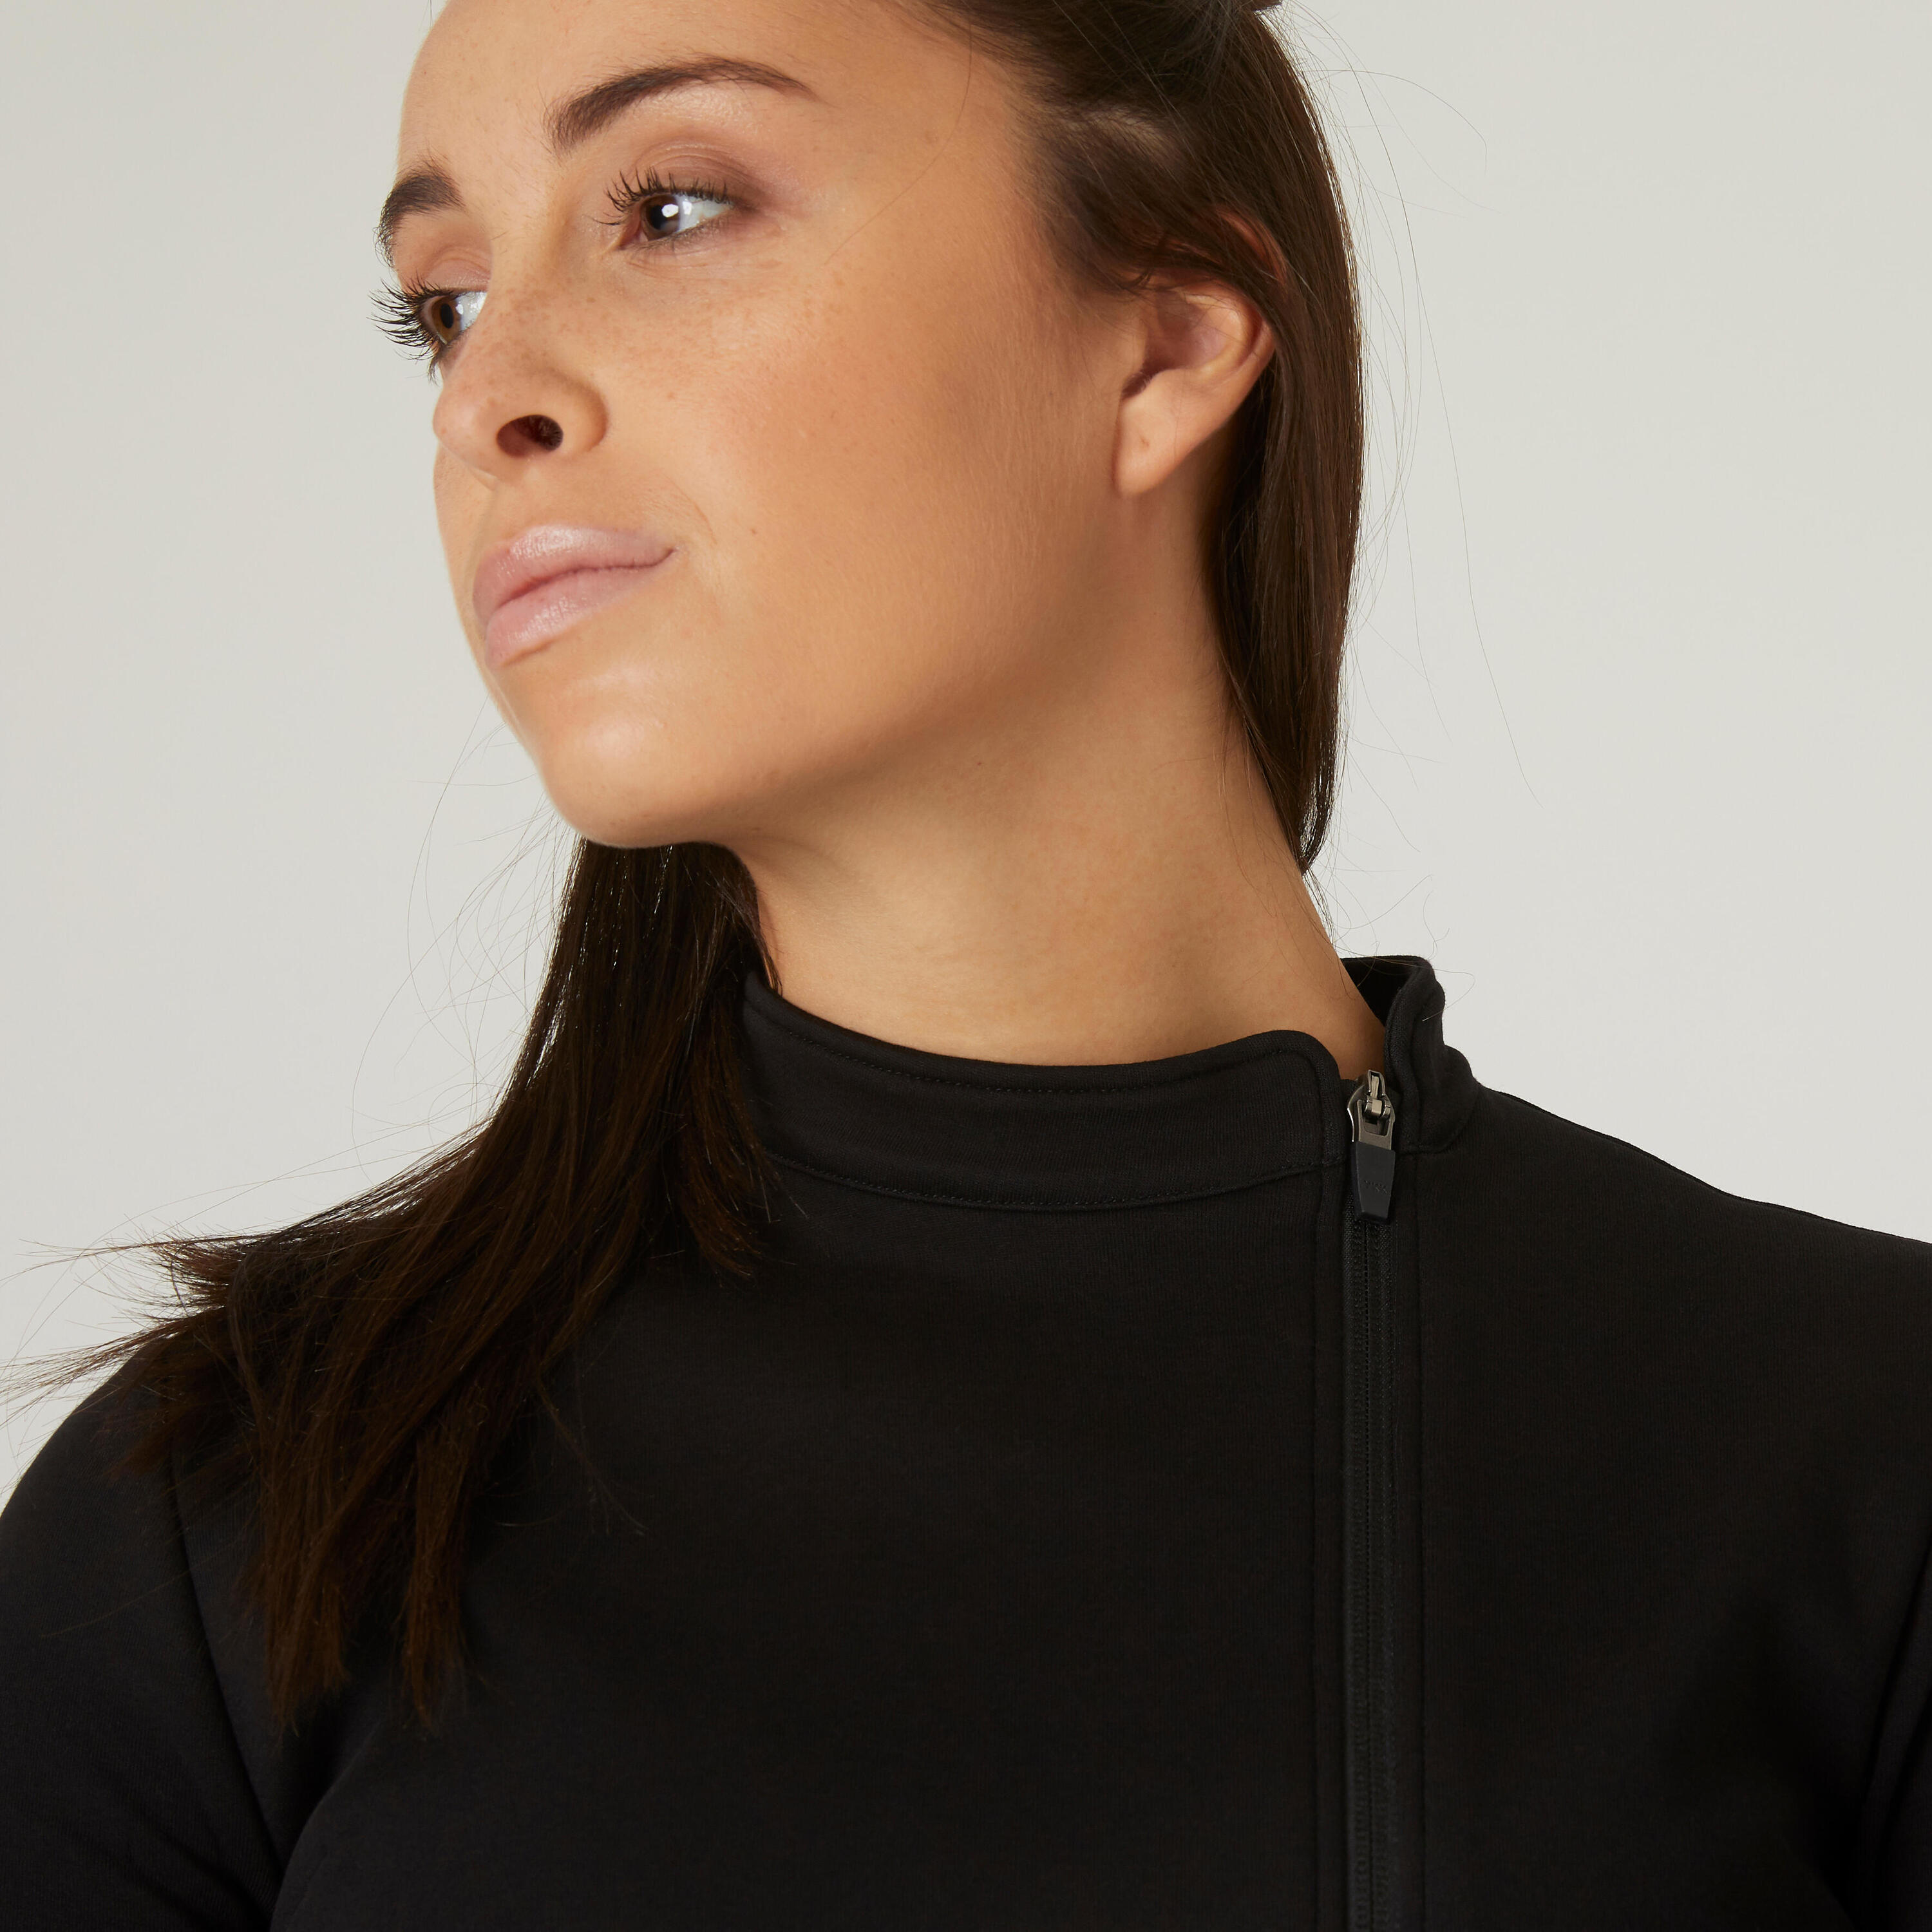 Women's Fitness Zip Sweatshirt 500 - Spacer Black 4/9